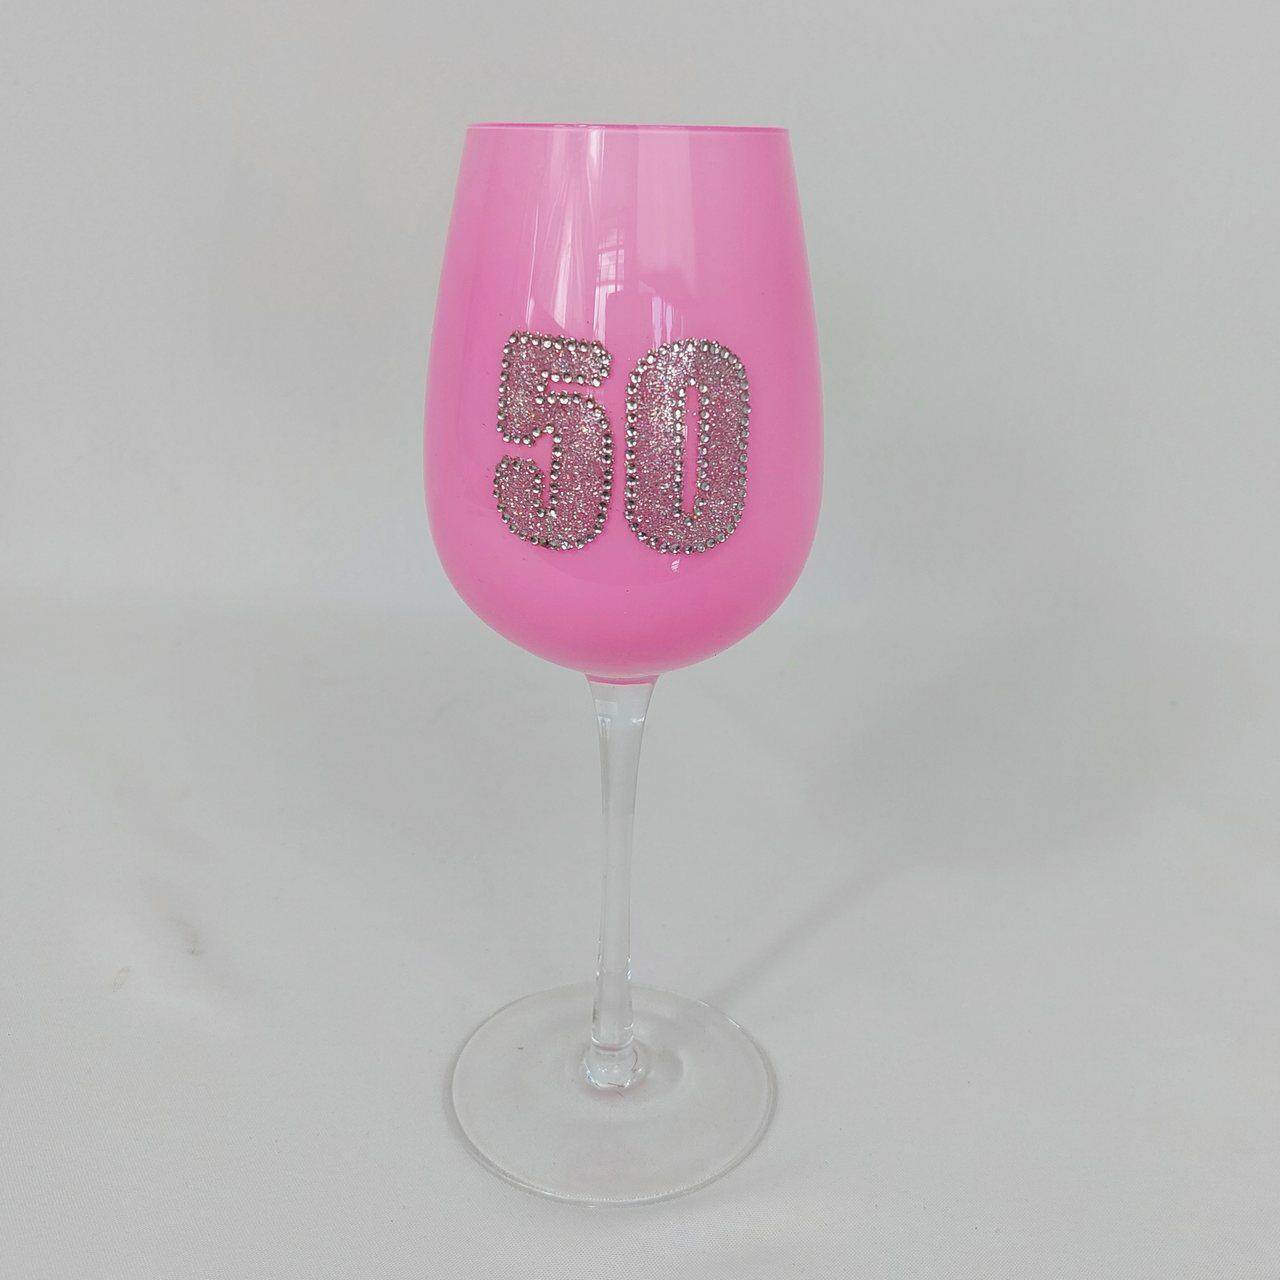 Kielich jubileuszowy wino różowy 50